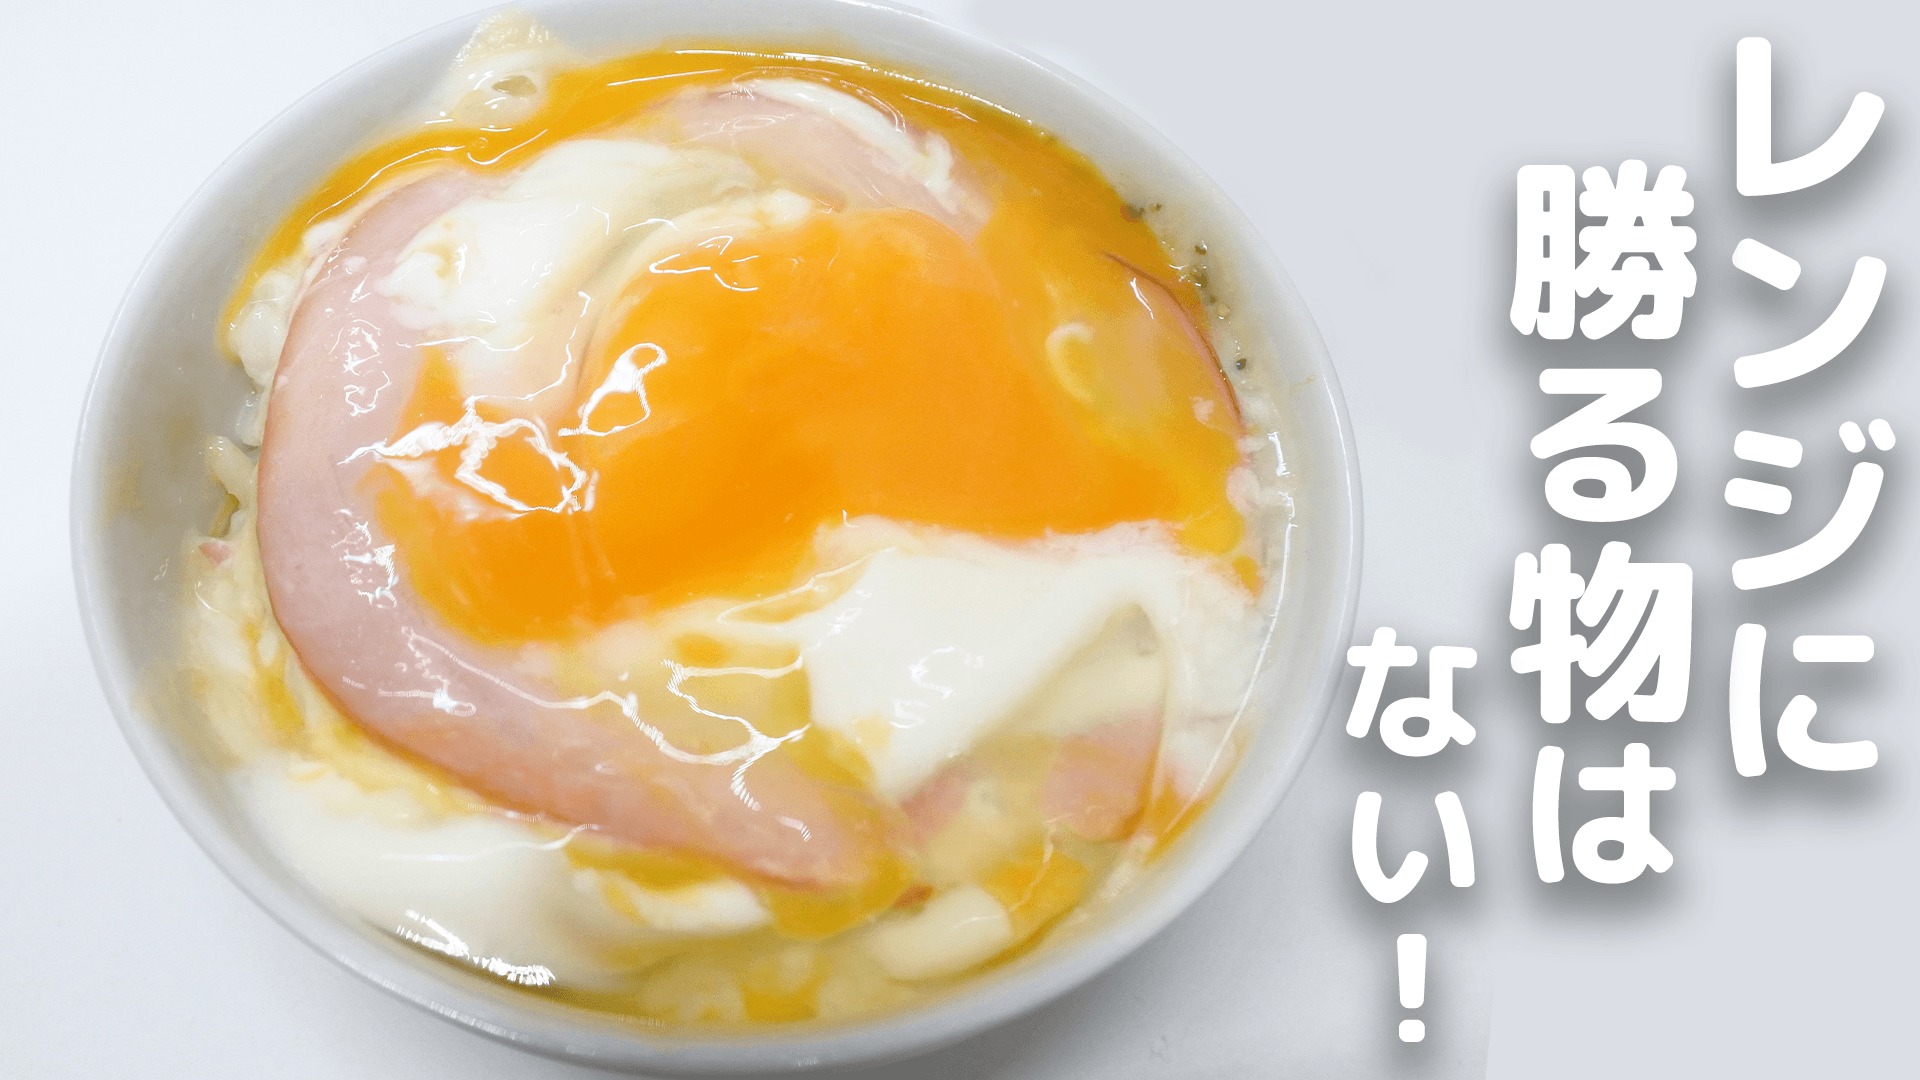 ハムで作る簡単朝ごはん トロトロふわふわのハムチーズ卵かけご飯 ずぼら民